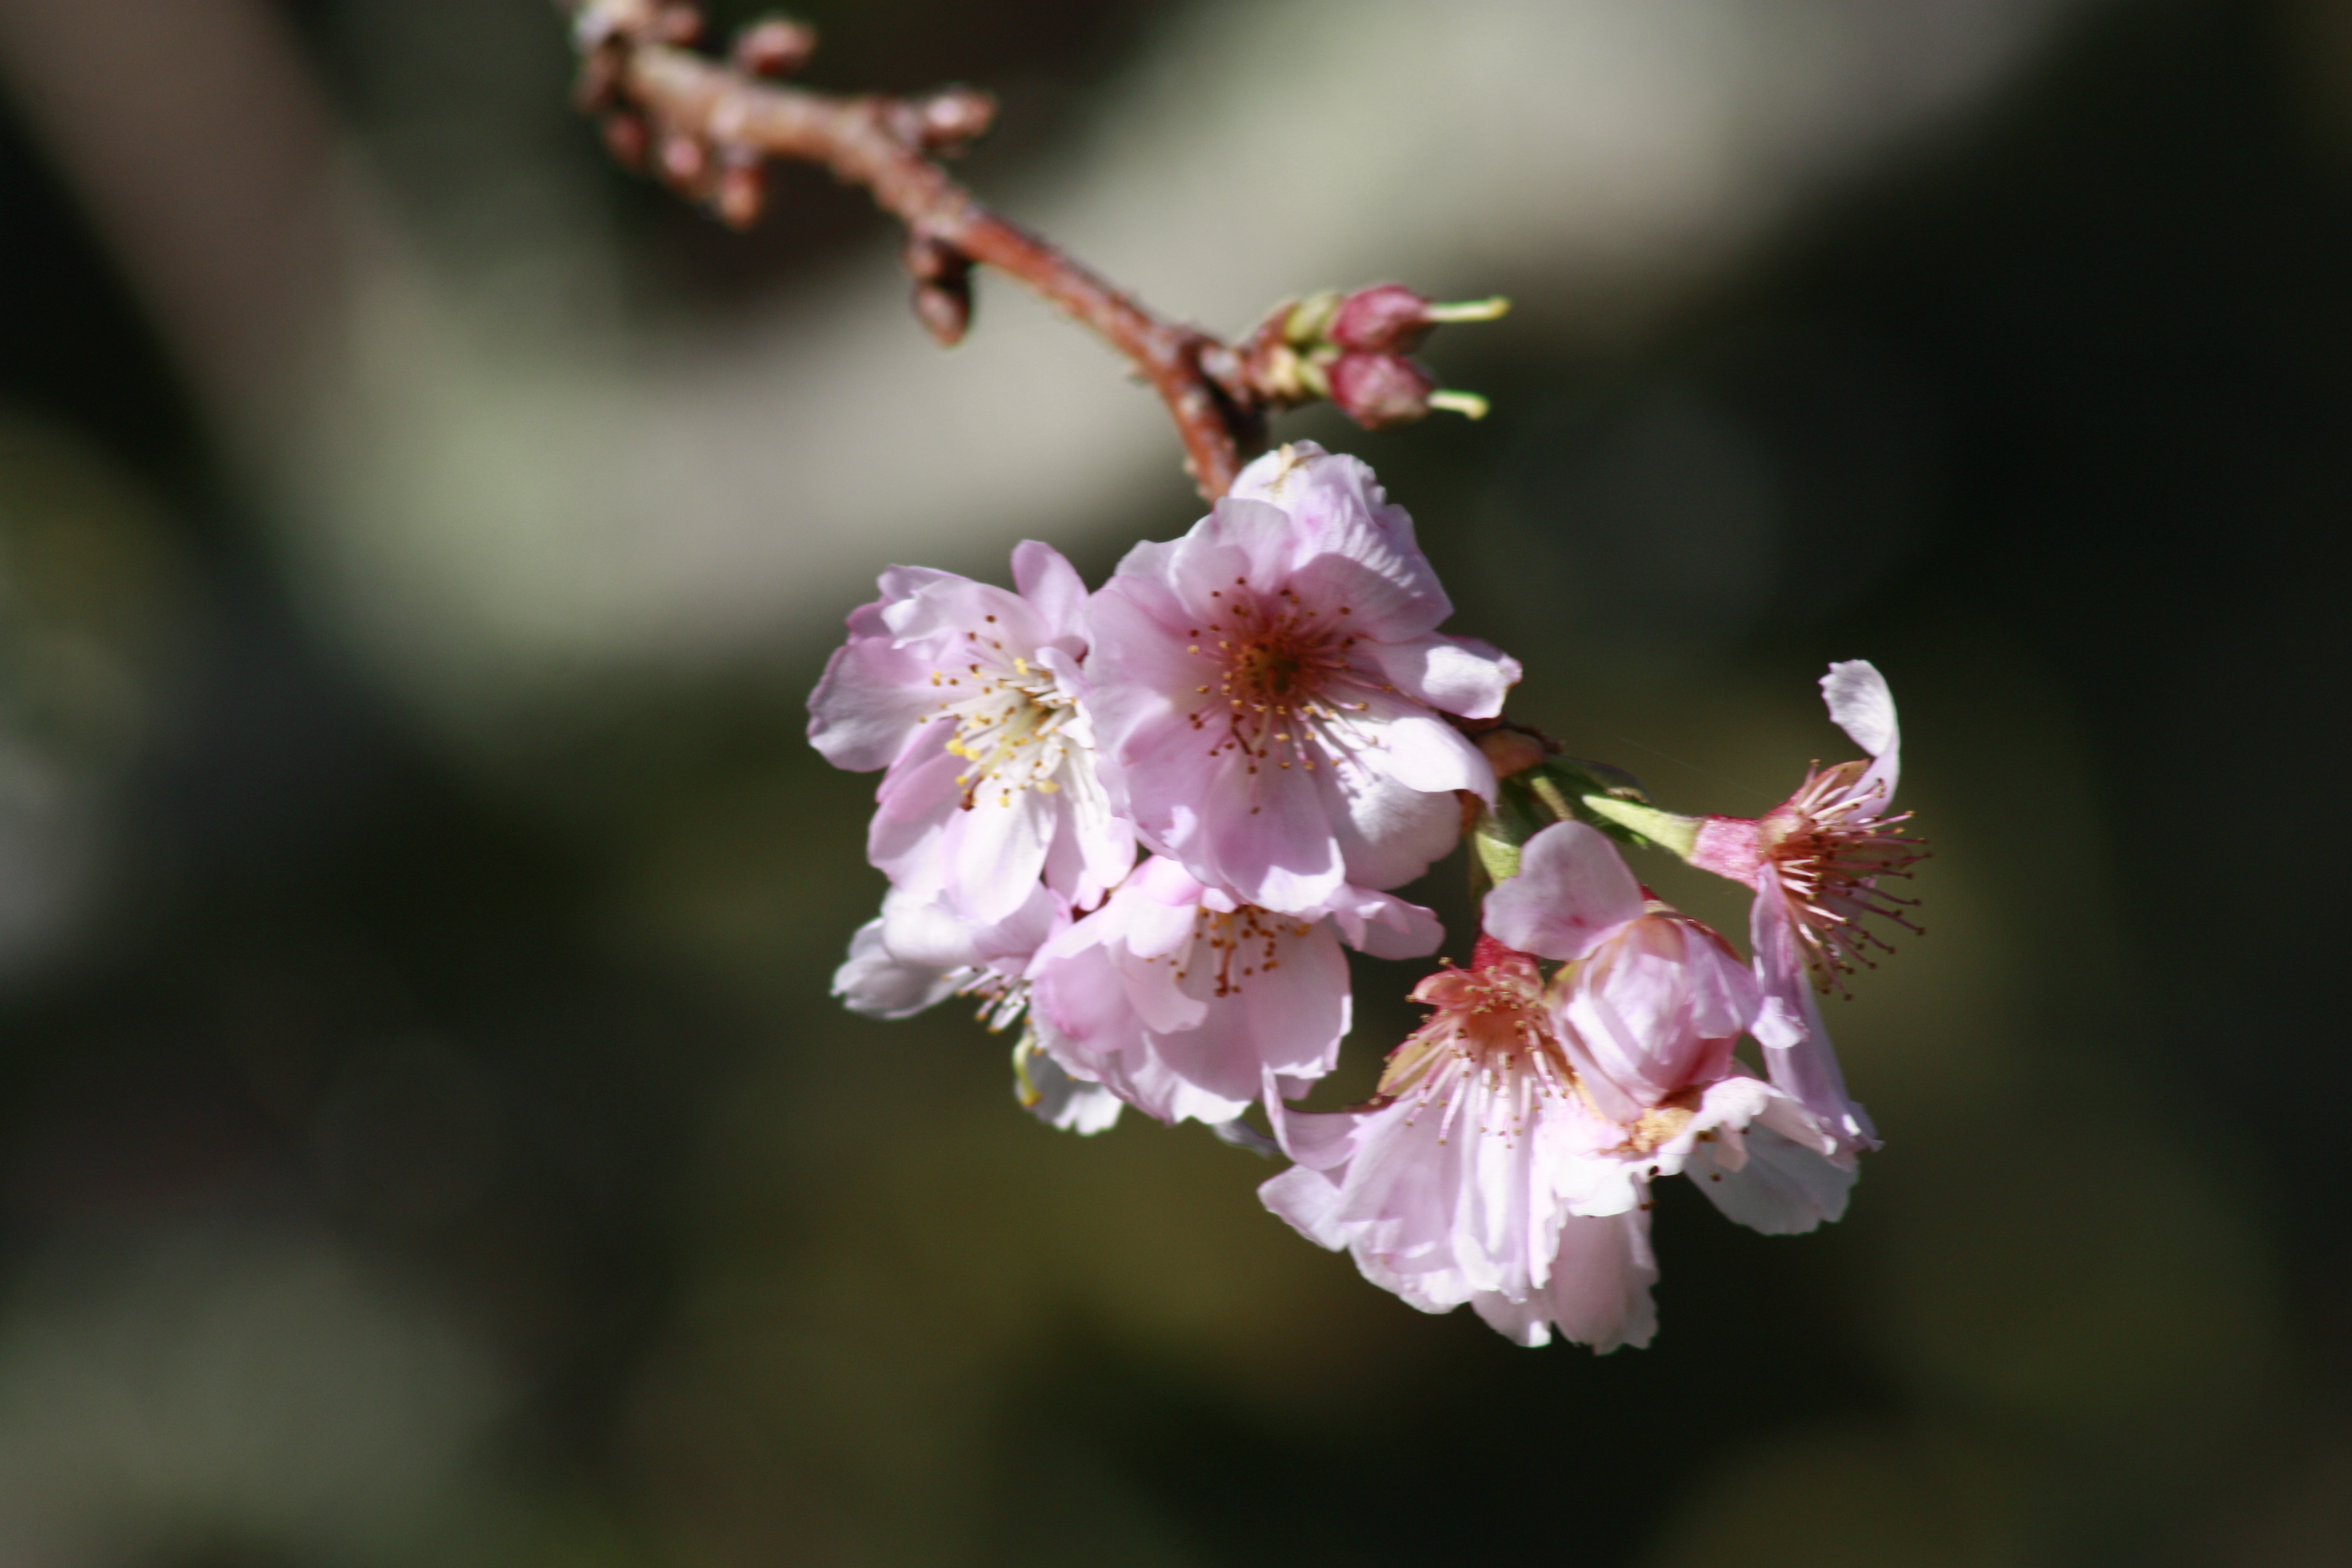 CherryBlossom_Flowers_2013-2.JPG#asset:2322